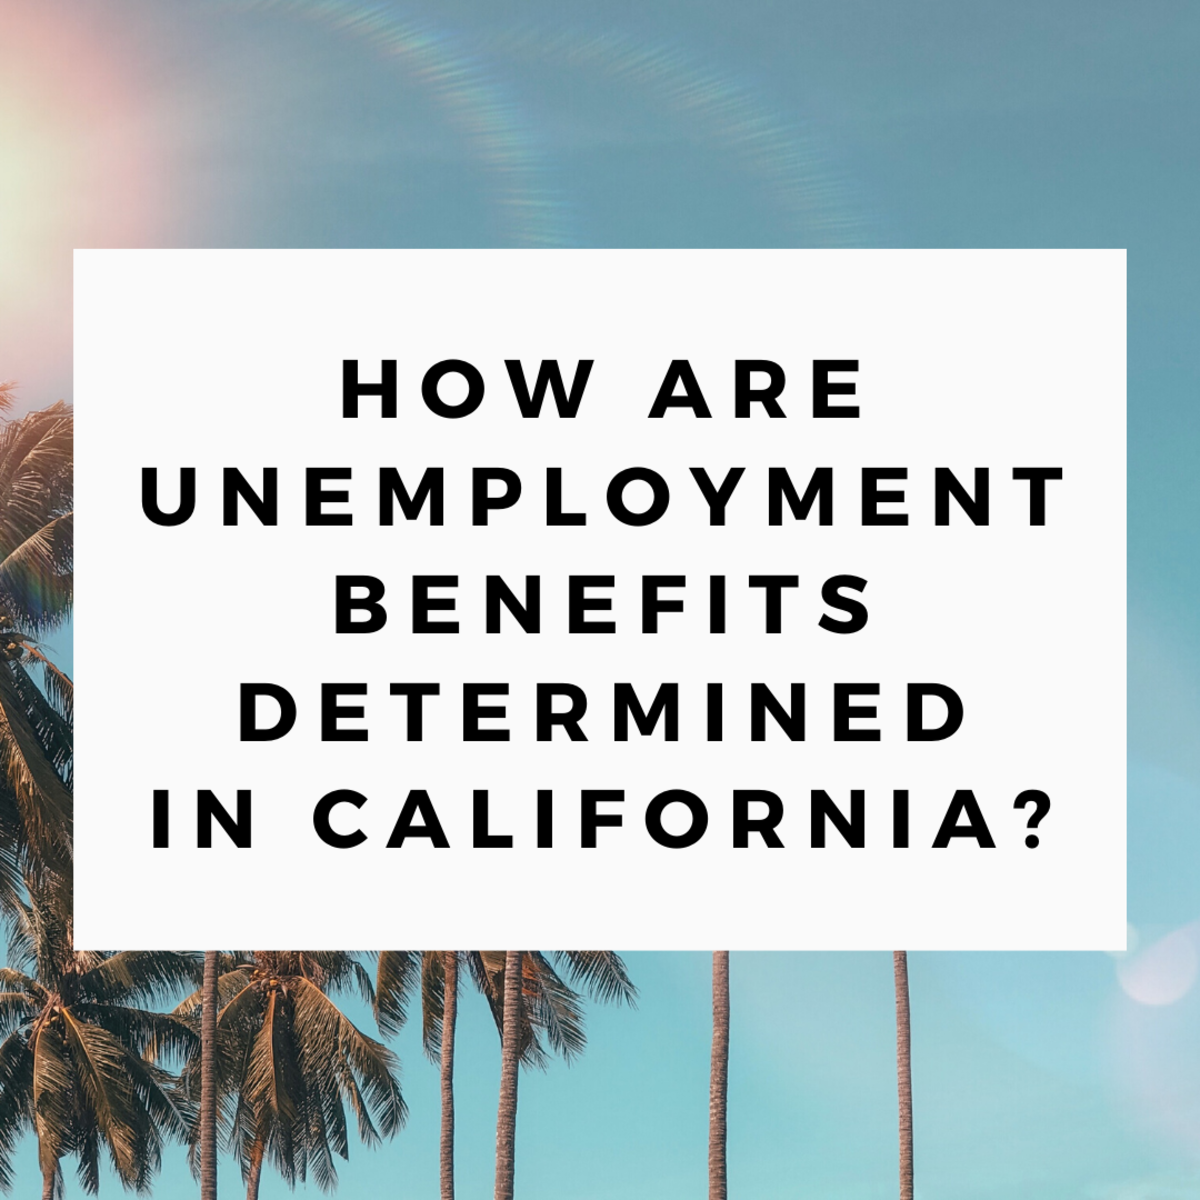 了解更多关于在加州申请失业的信息，比如你应该何时申请失业，你可能会得到多少。